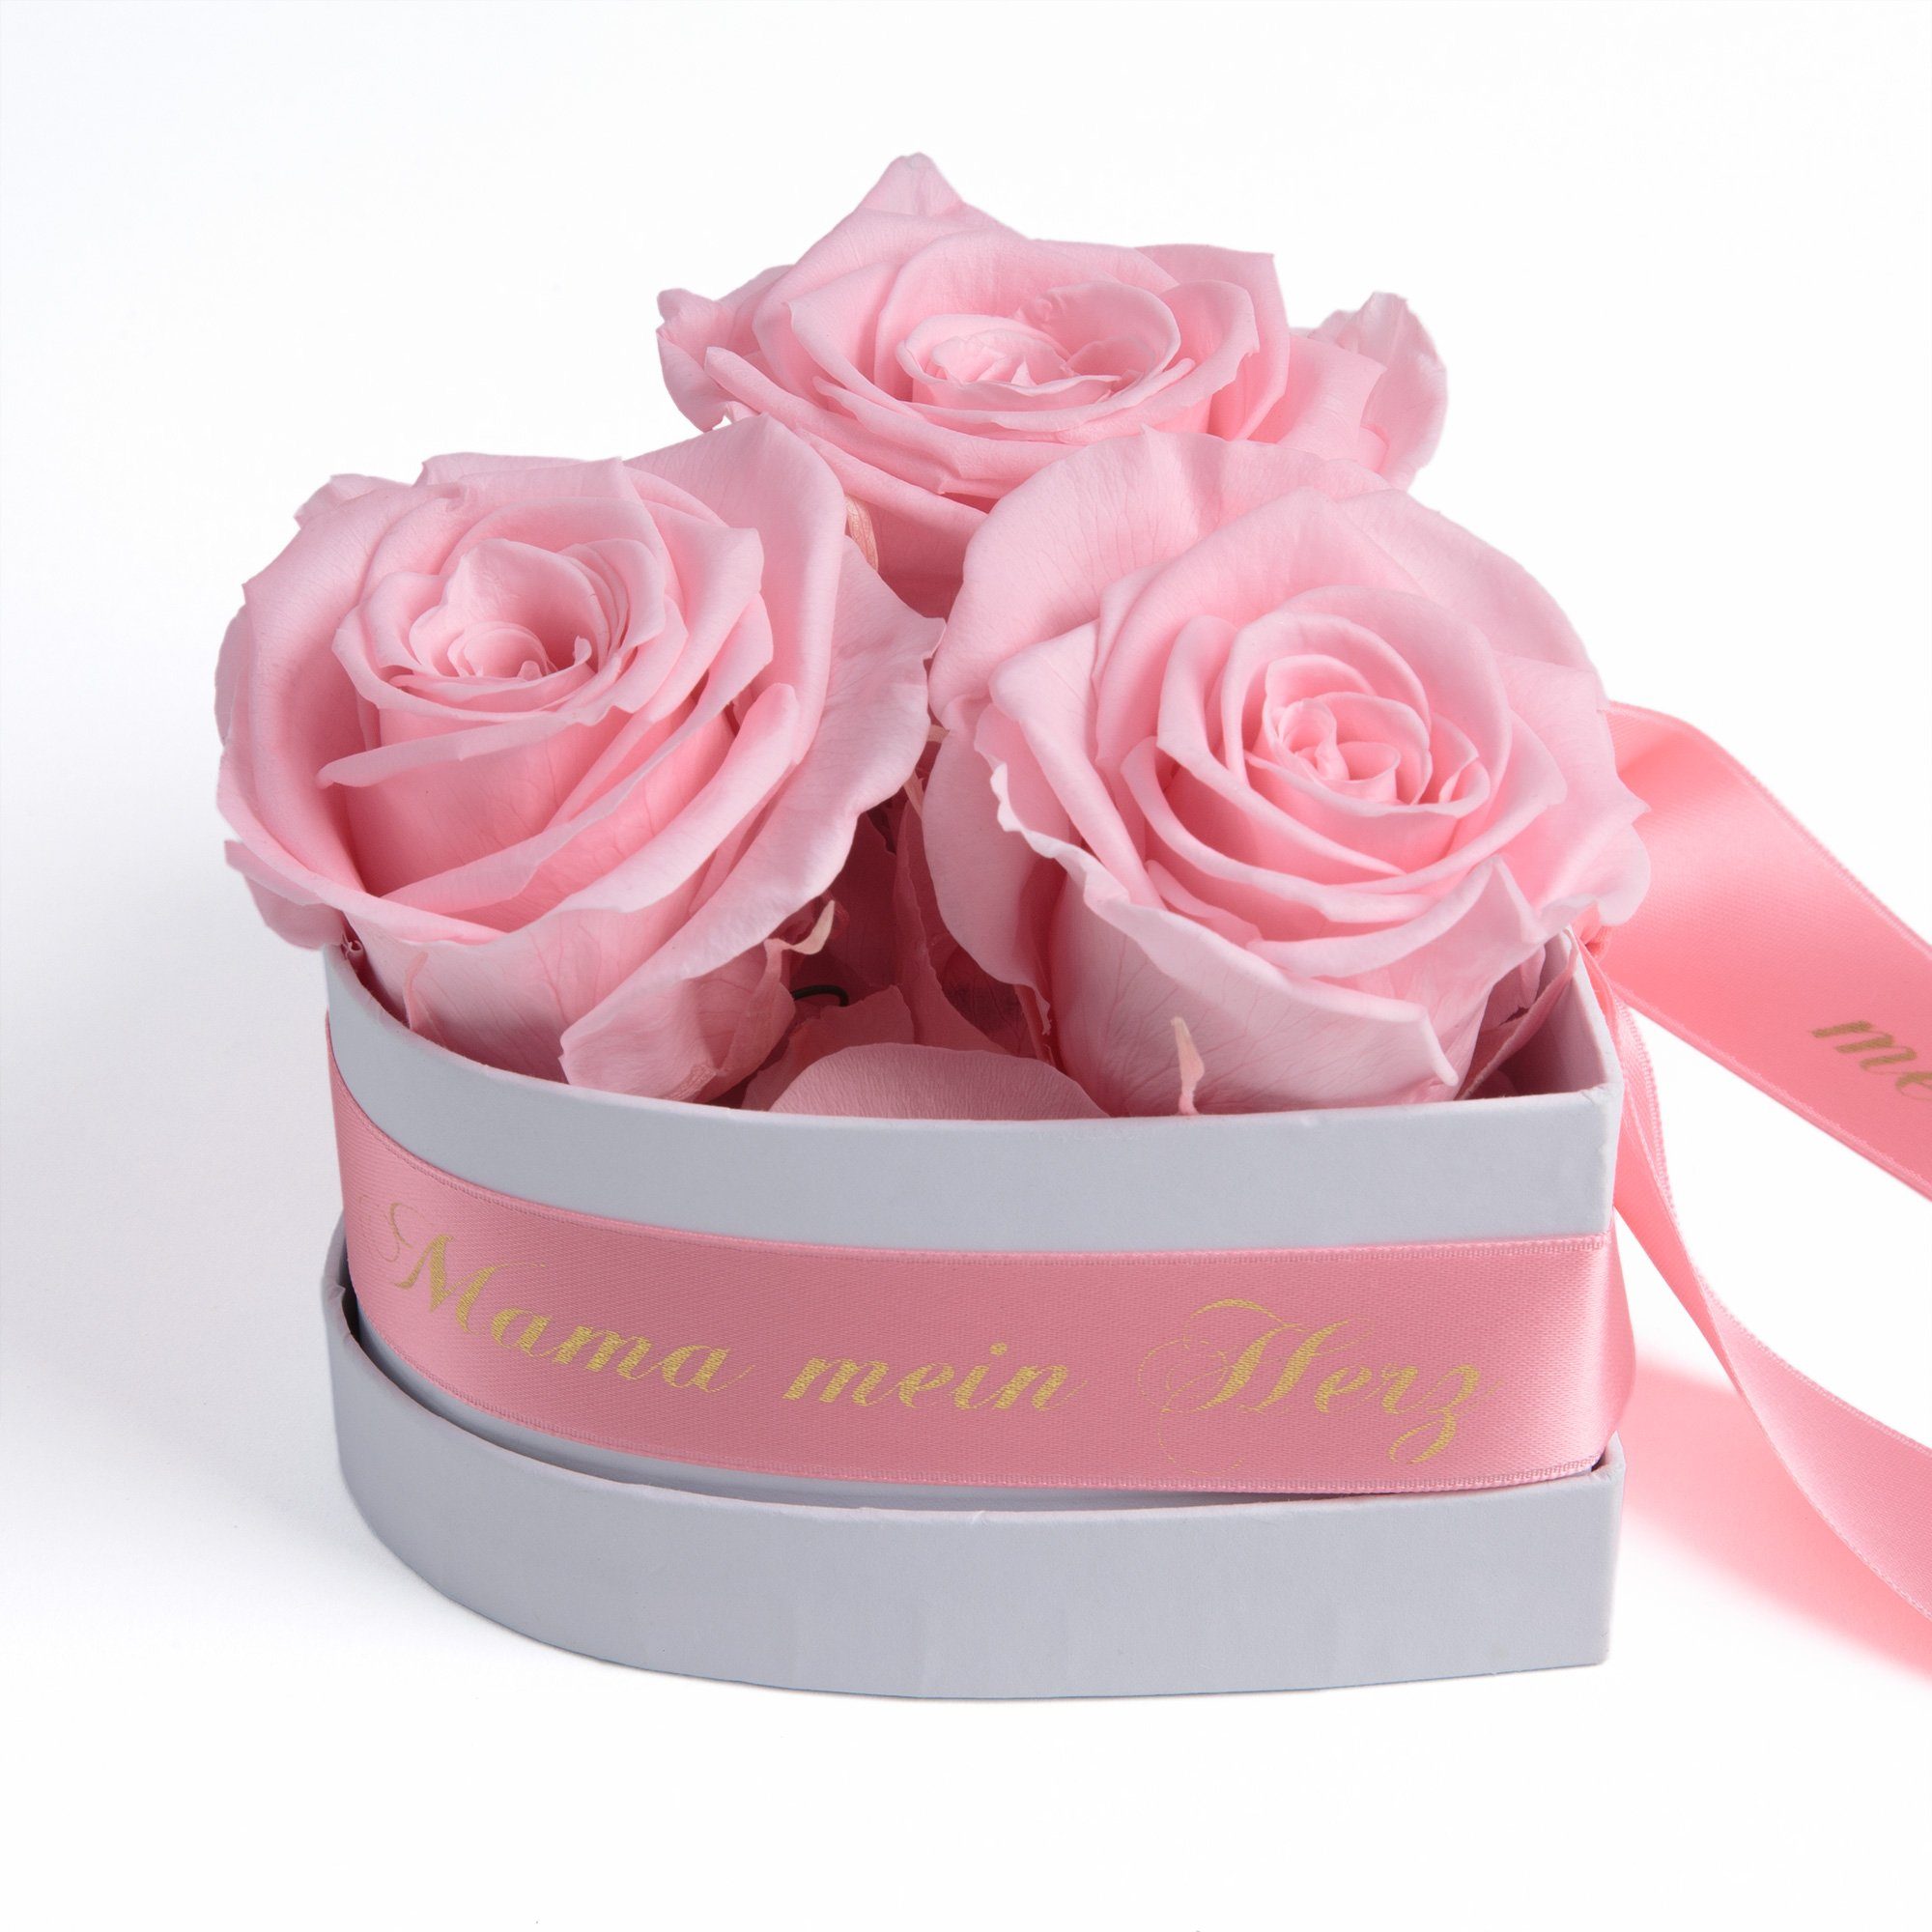 Kunstblume Mama Geschenk Du bist mein Herz Rosenbox Geschenkbox 3 Infinity Rosen Rose, ROSEMARIE SCHULZ Heidelberg, Höhe 10 cm, echte Blumen 3 Jahre haltbar rosa